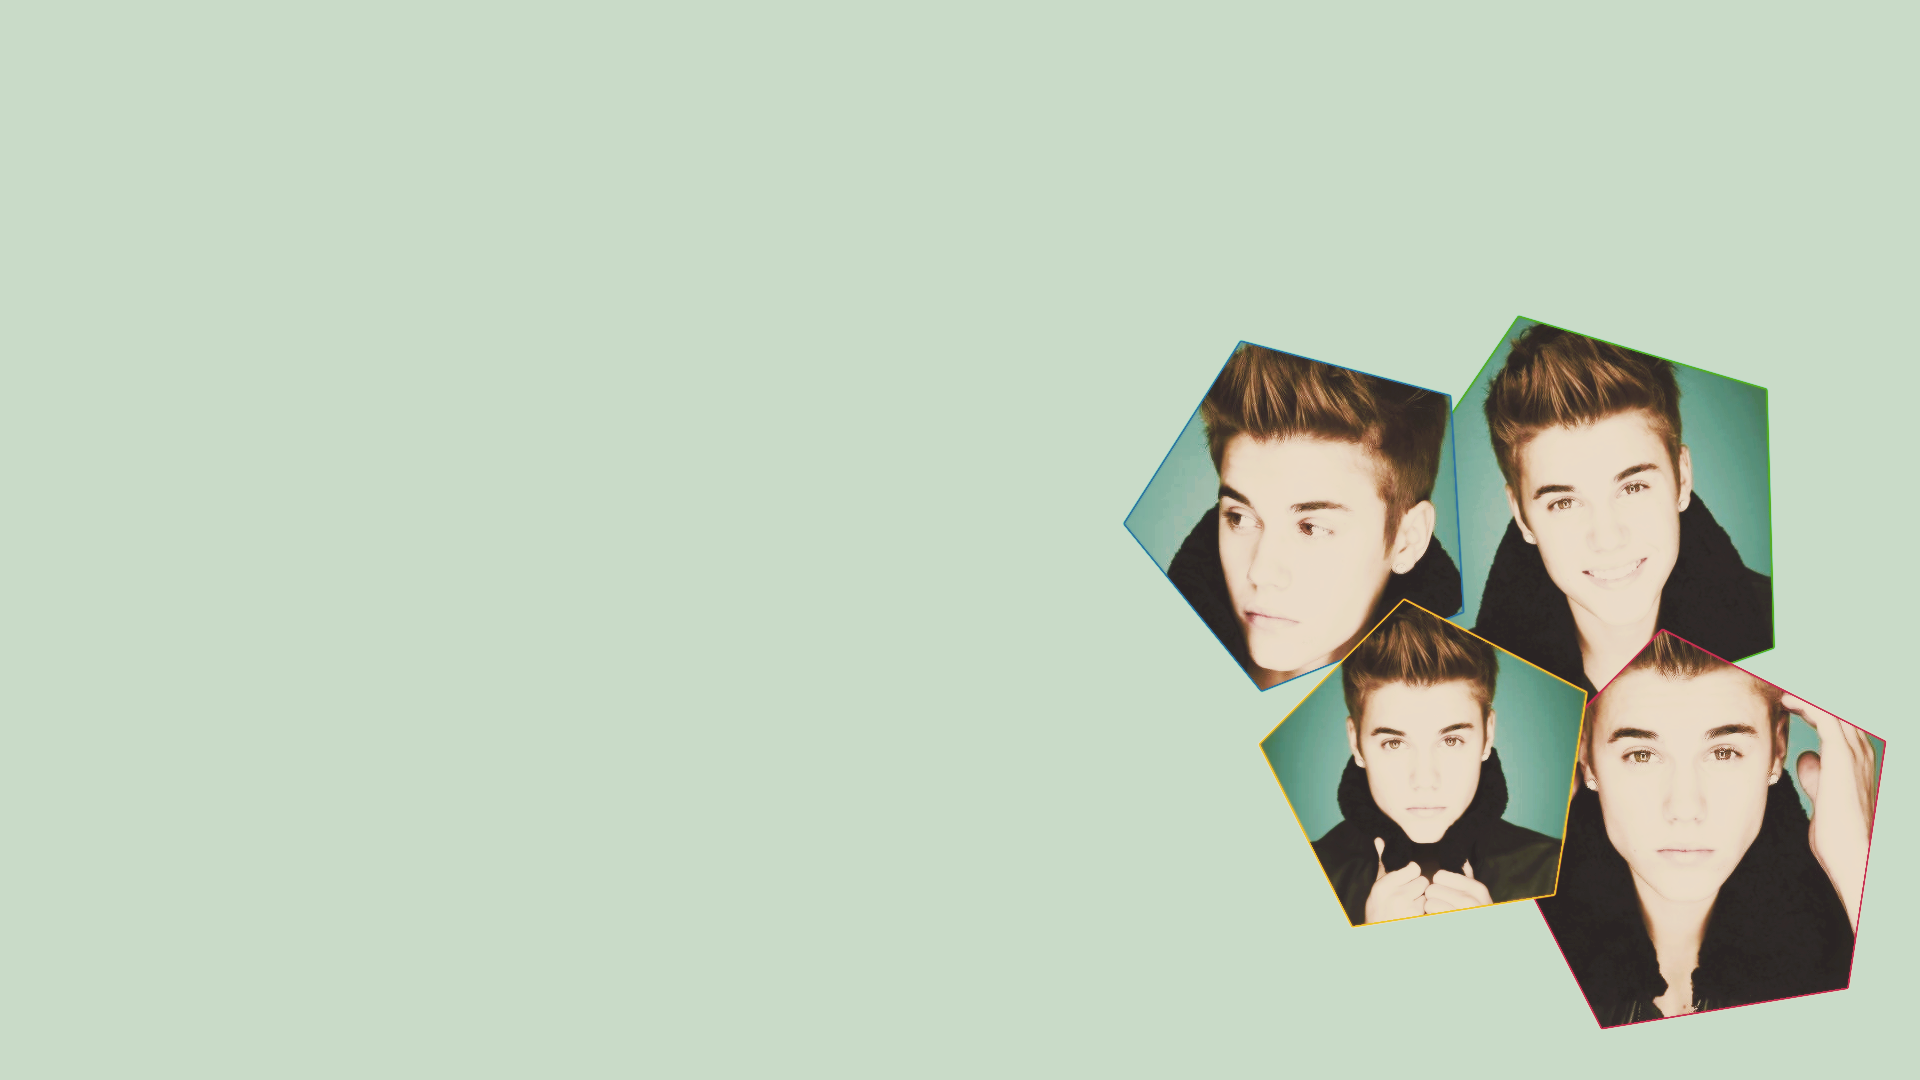 Free download Justin Bieber Wallpaper For Desktop Download [1920x1080] for your Desktop, Mobile & Tablet. Explore Justin Bieber Tumblr Background 2016. Justin Bieber Tumblr Background Justin Bieber Wallpaper